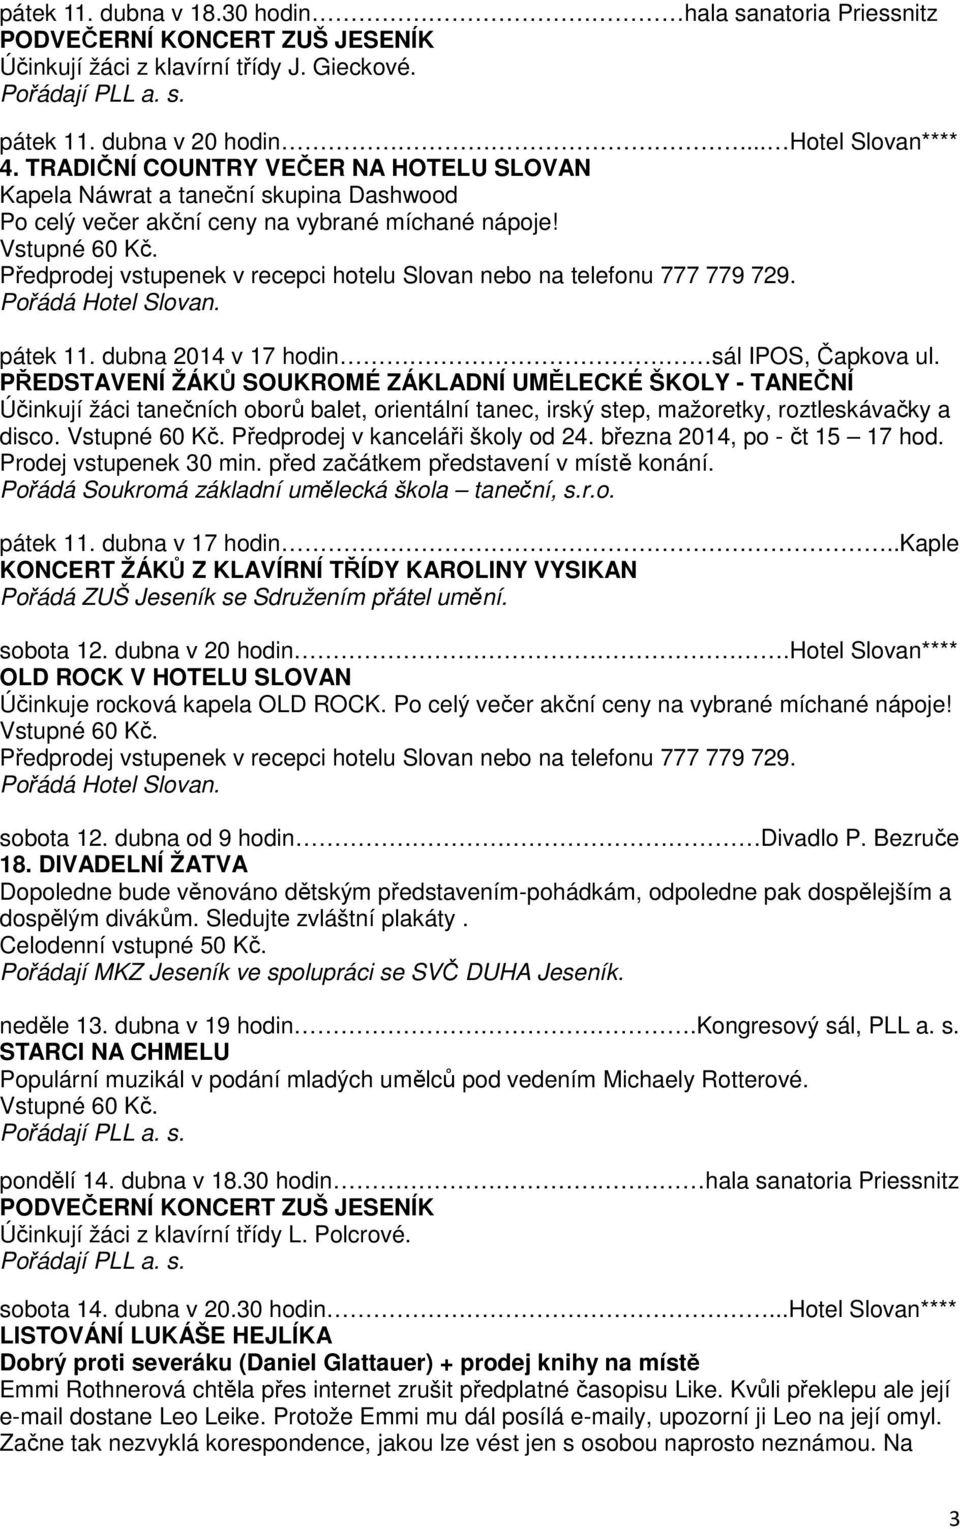 Předprodej vstupenek v recepci hotelu Slovan nebo na telefonu 777 779 729. pátek 11. dubna 2014 v 17 hodin sál IPOS, Čapkova ul.